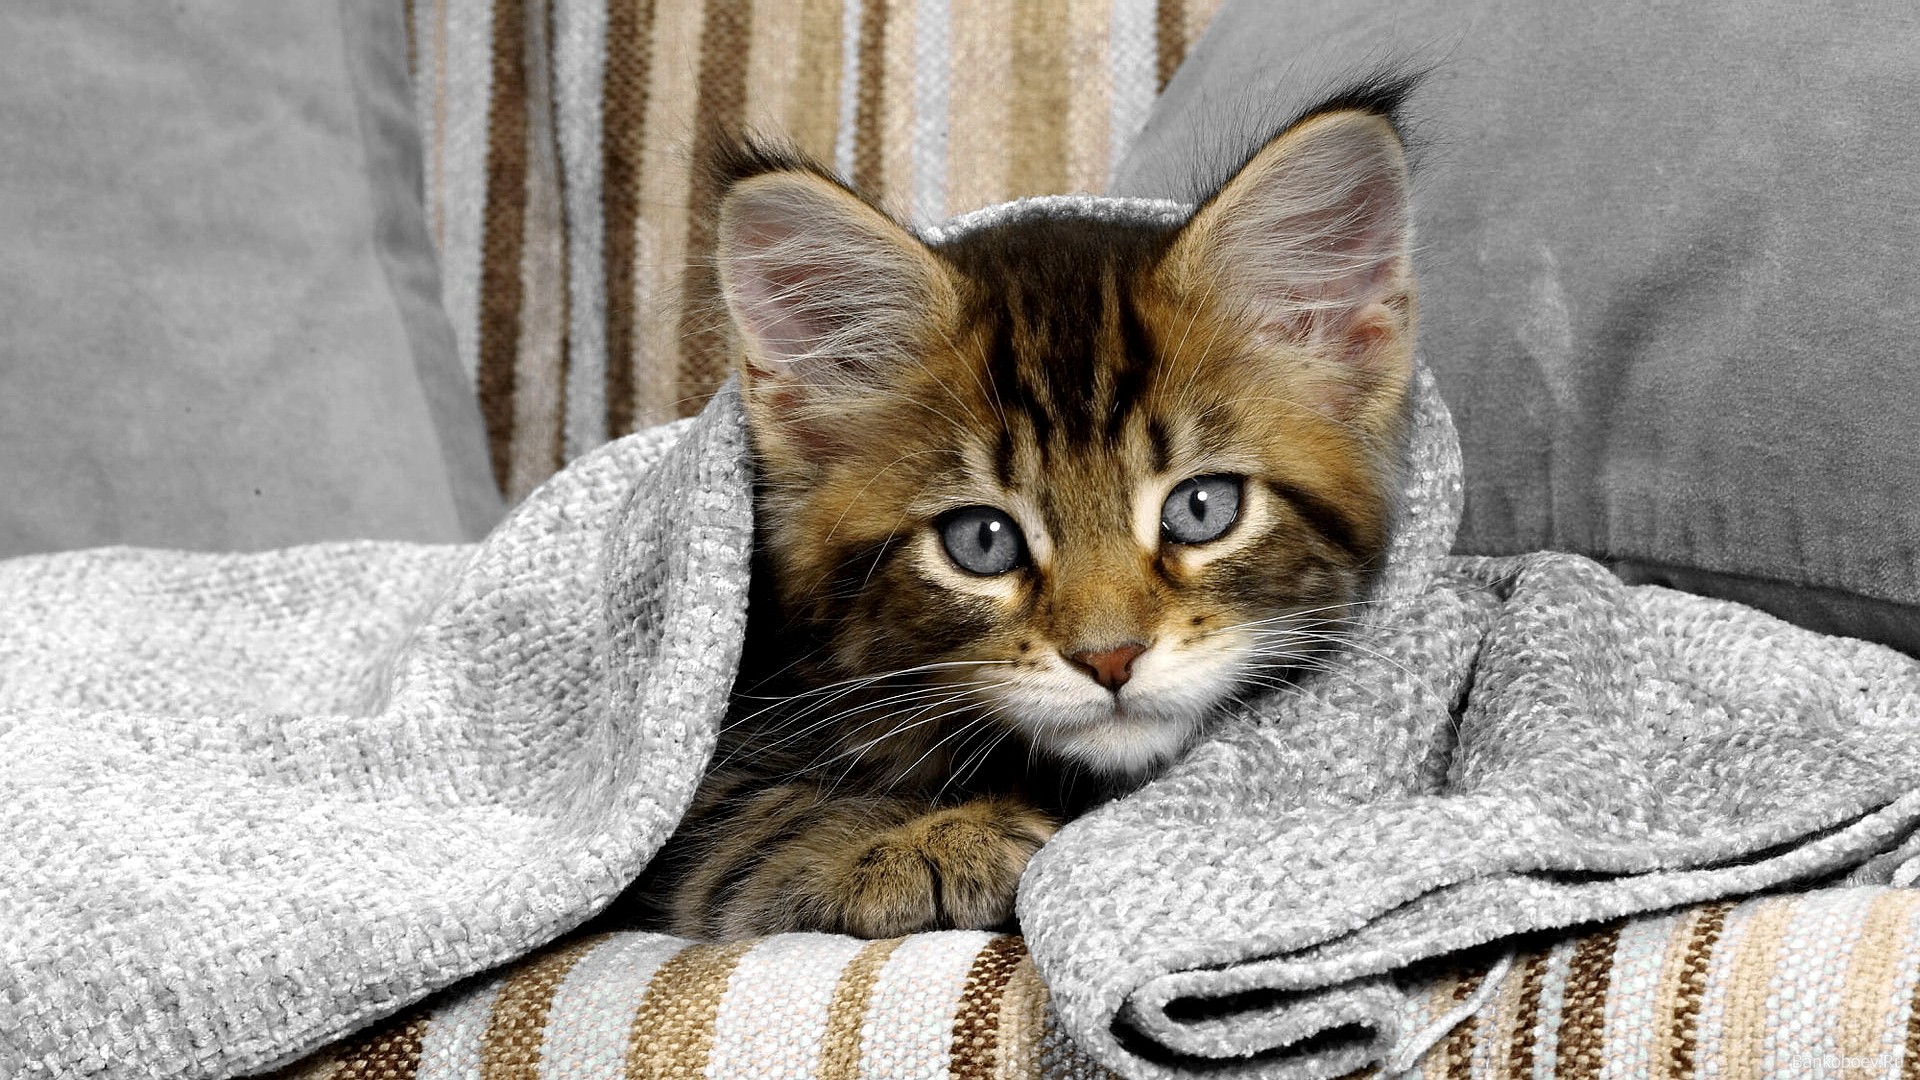 cats, pets - desktop wallpaper